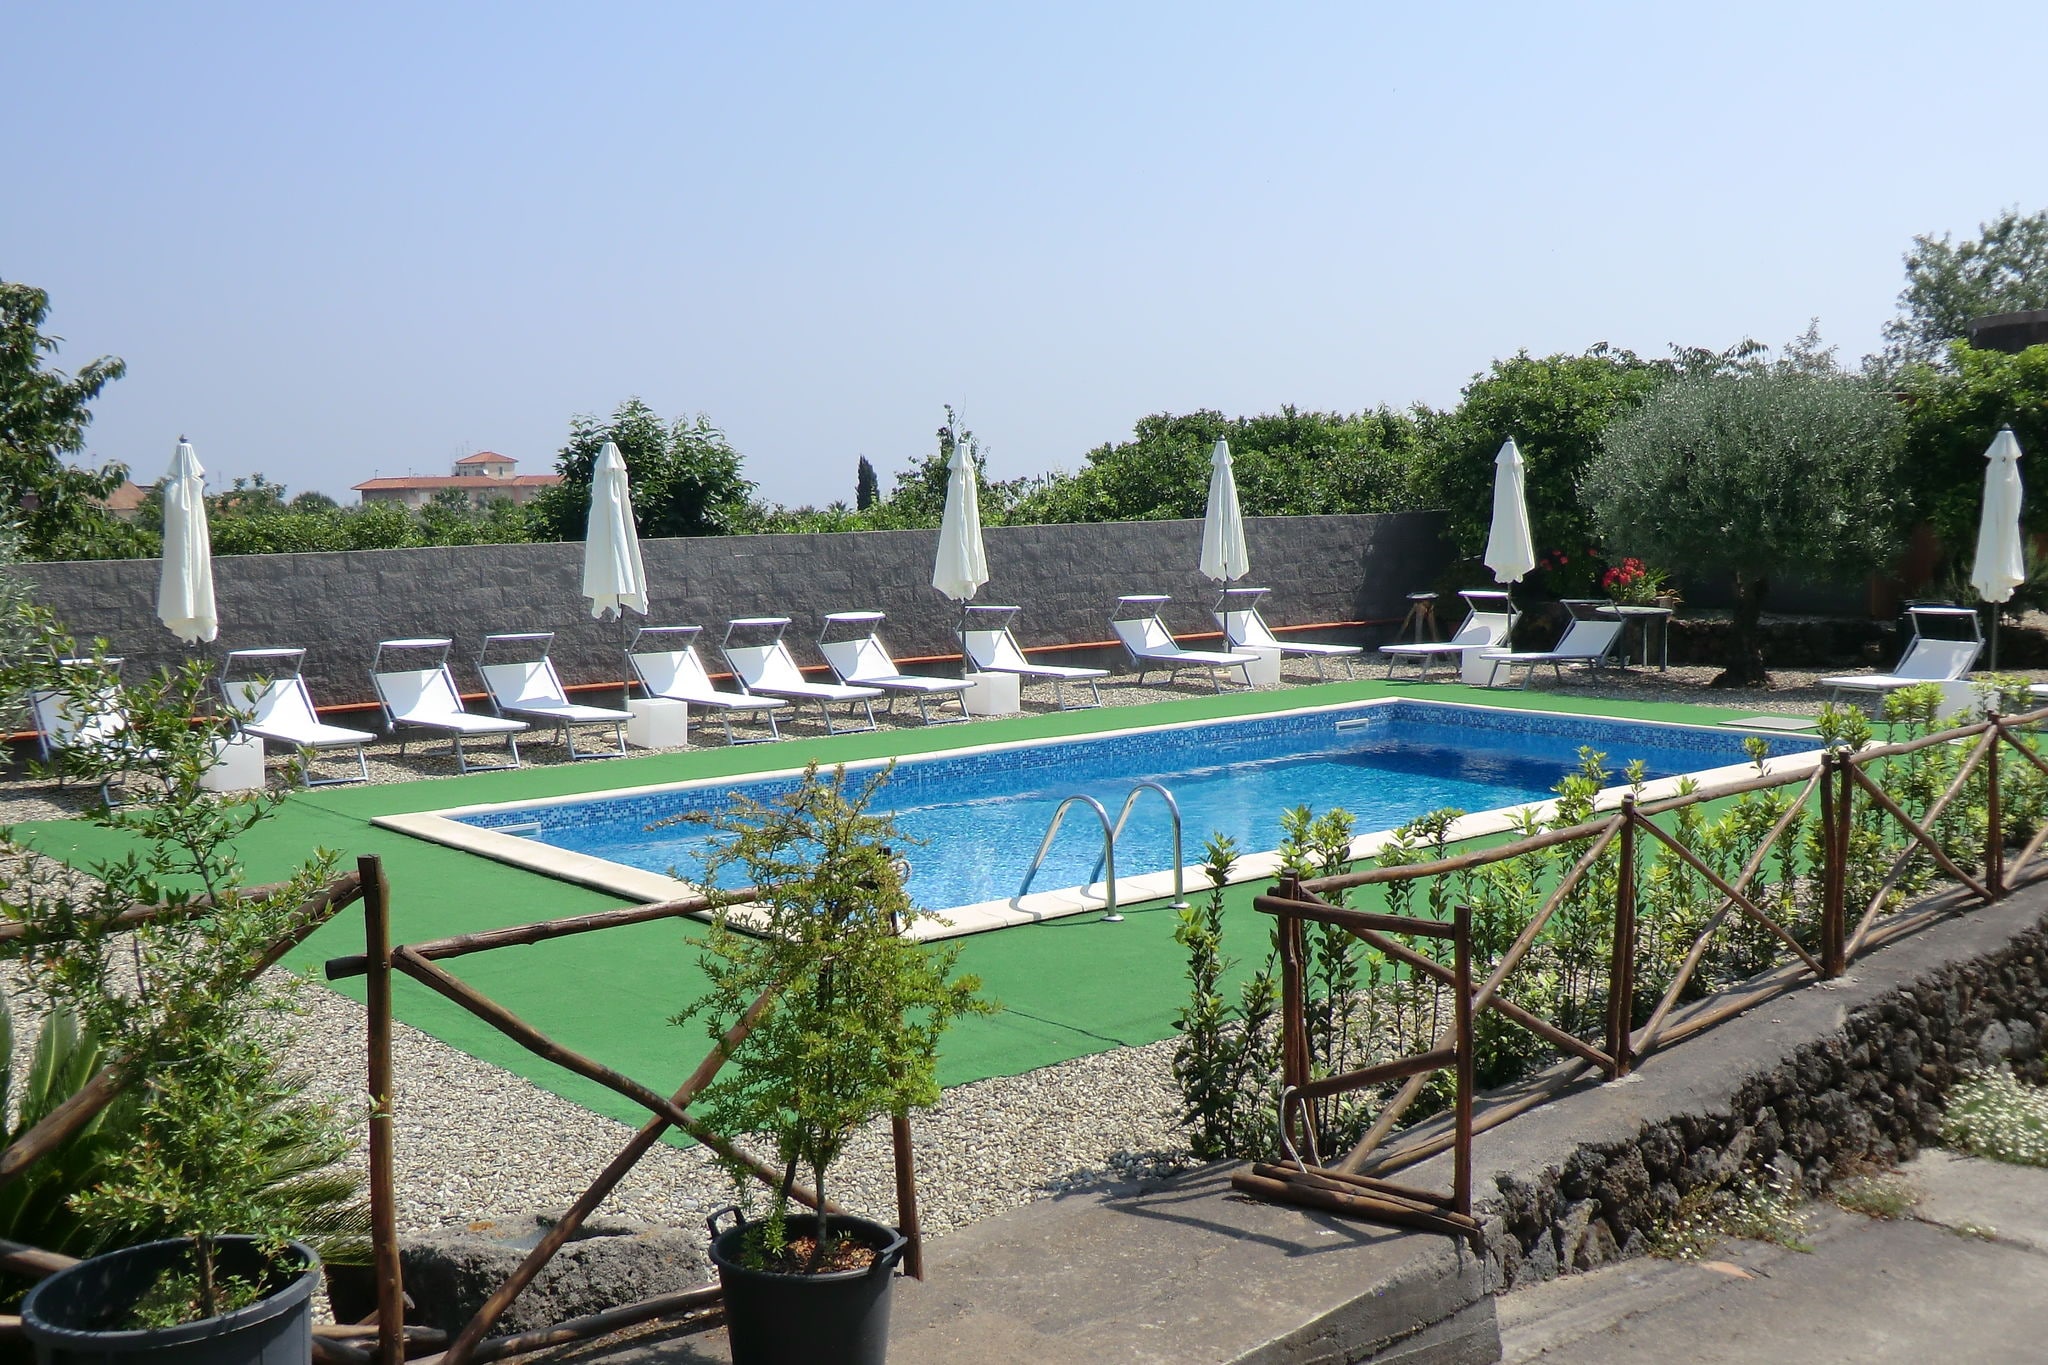 Maison de vacances confortable avec piscine privée en Sicile